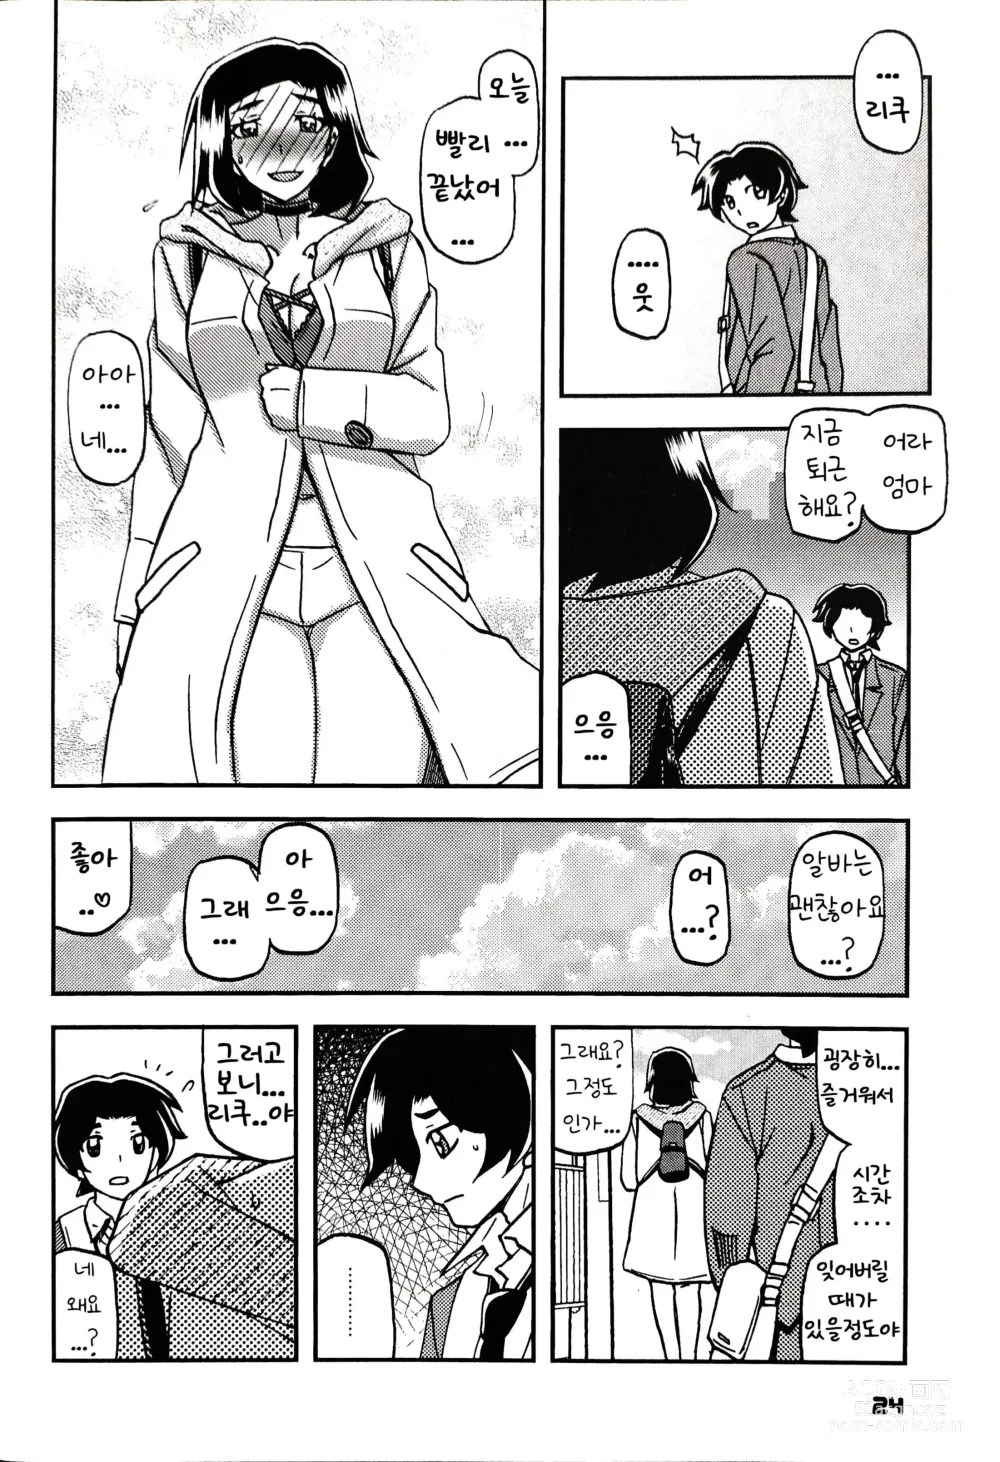 Page 23 of doujinshi Akebi no Mi - Misora AFTER